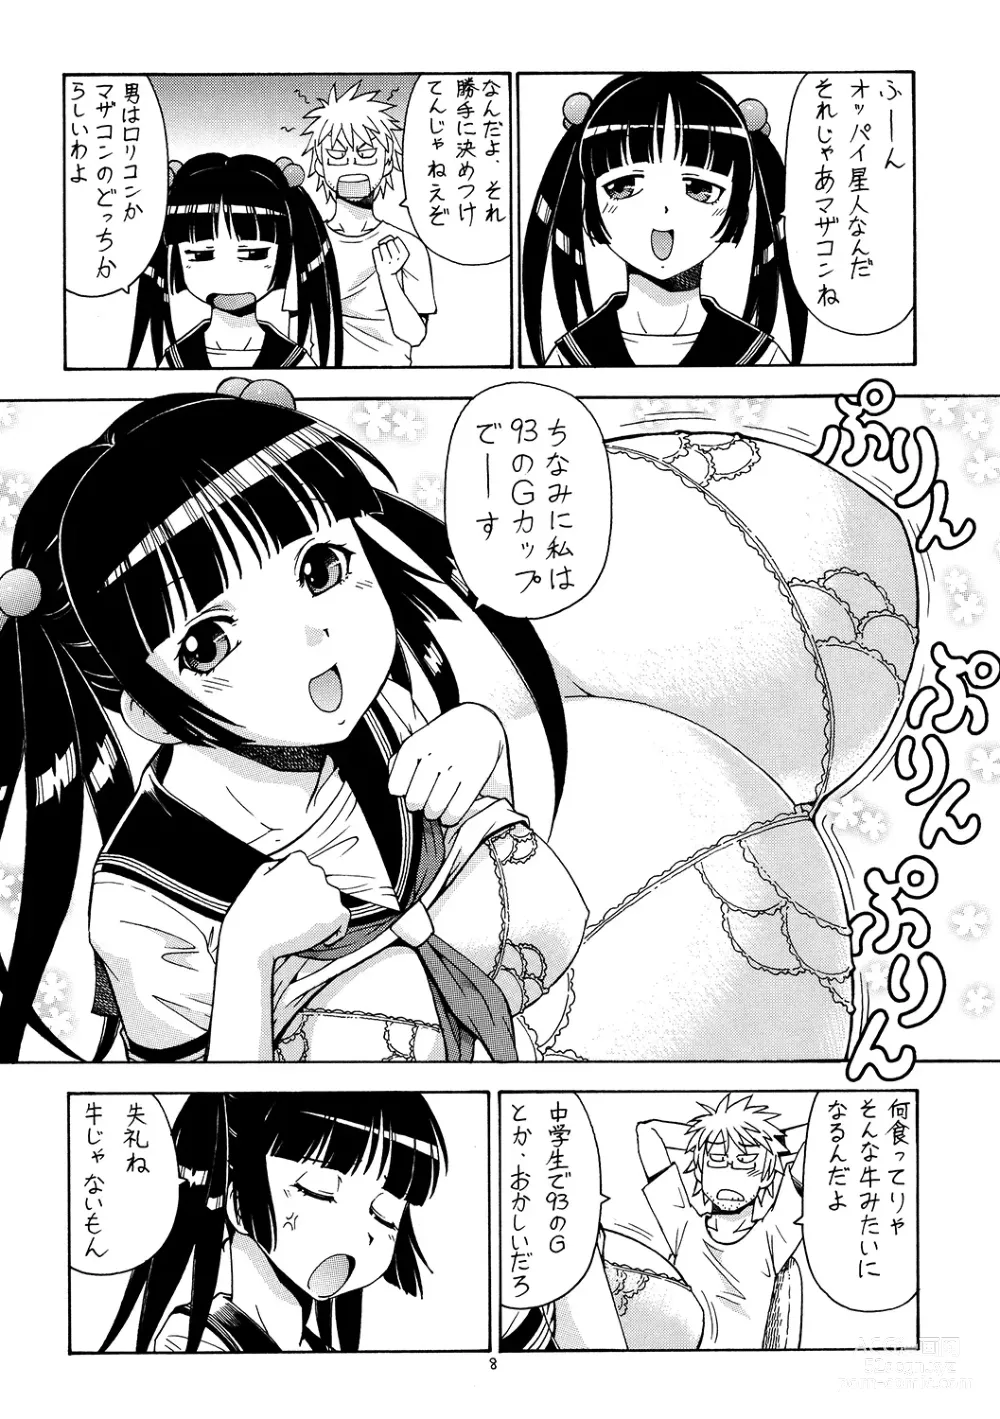 Page 9 of doujinshi Ita Yome Monogatari 2